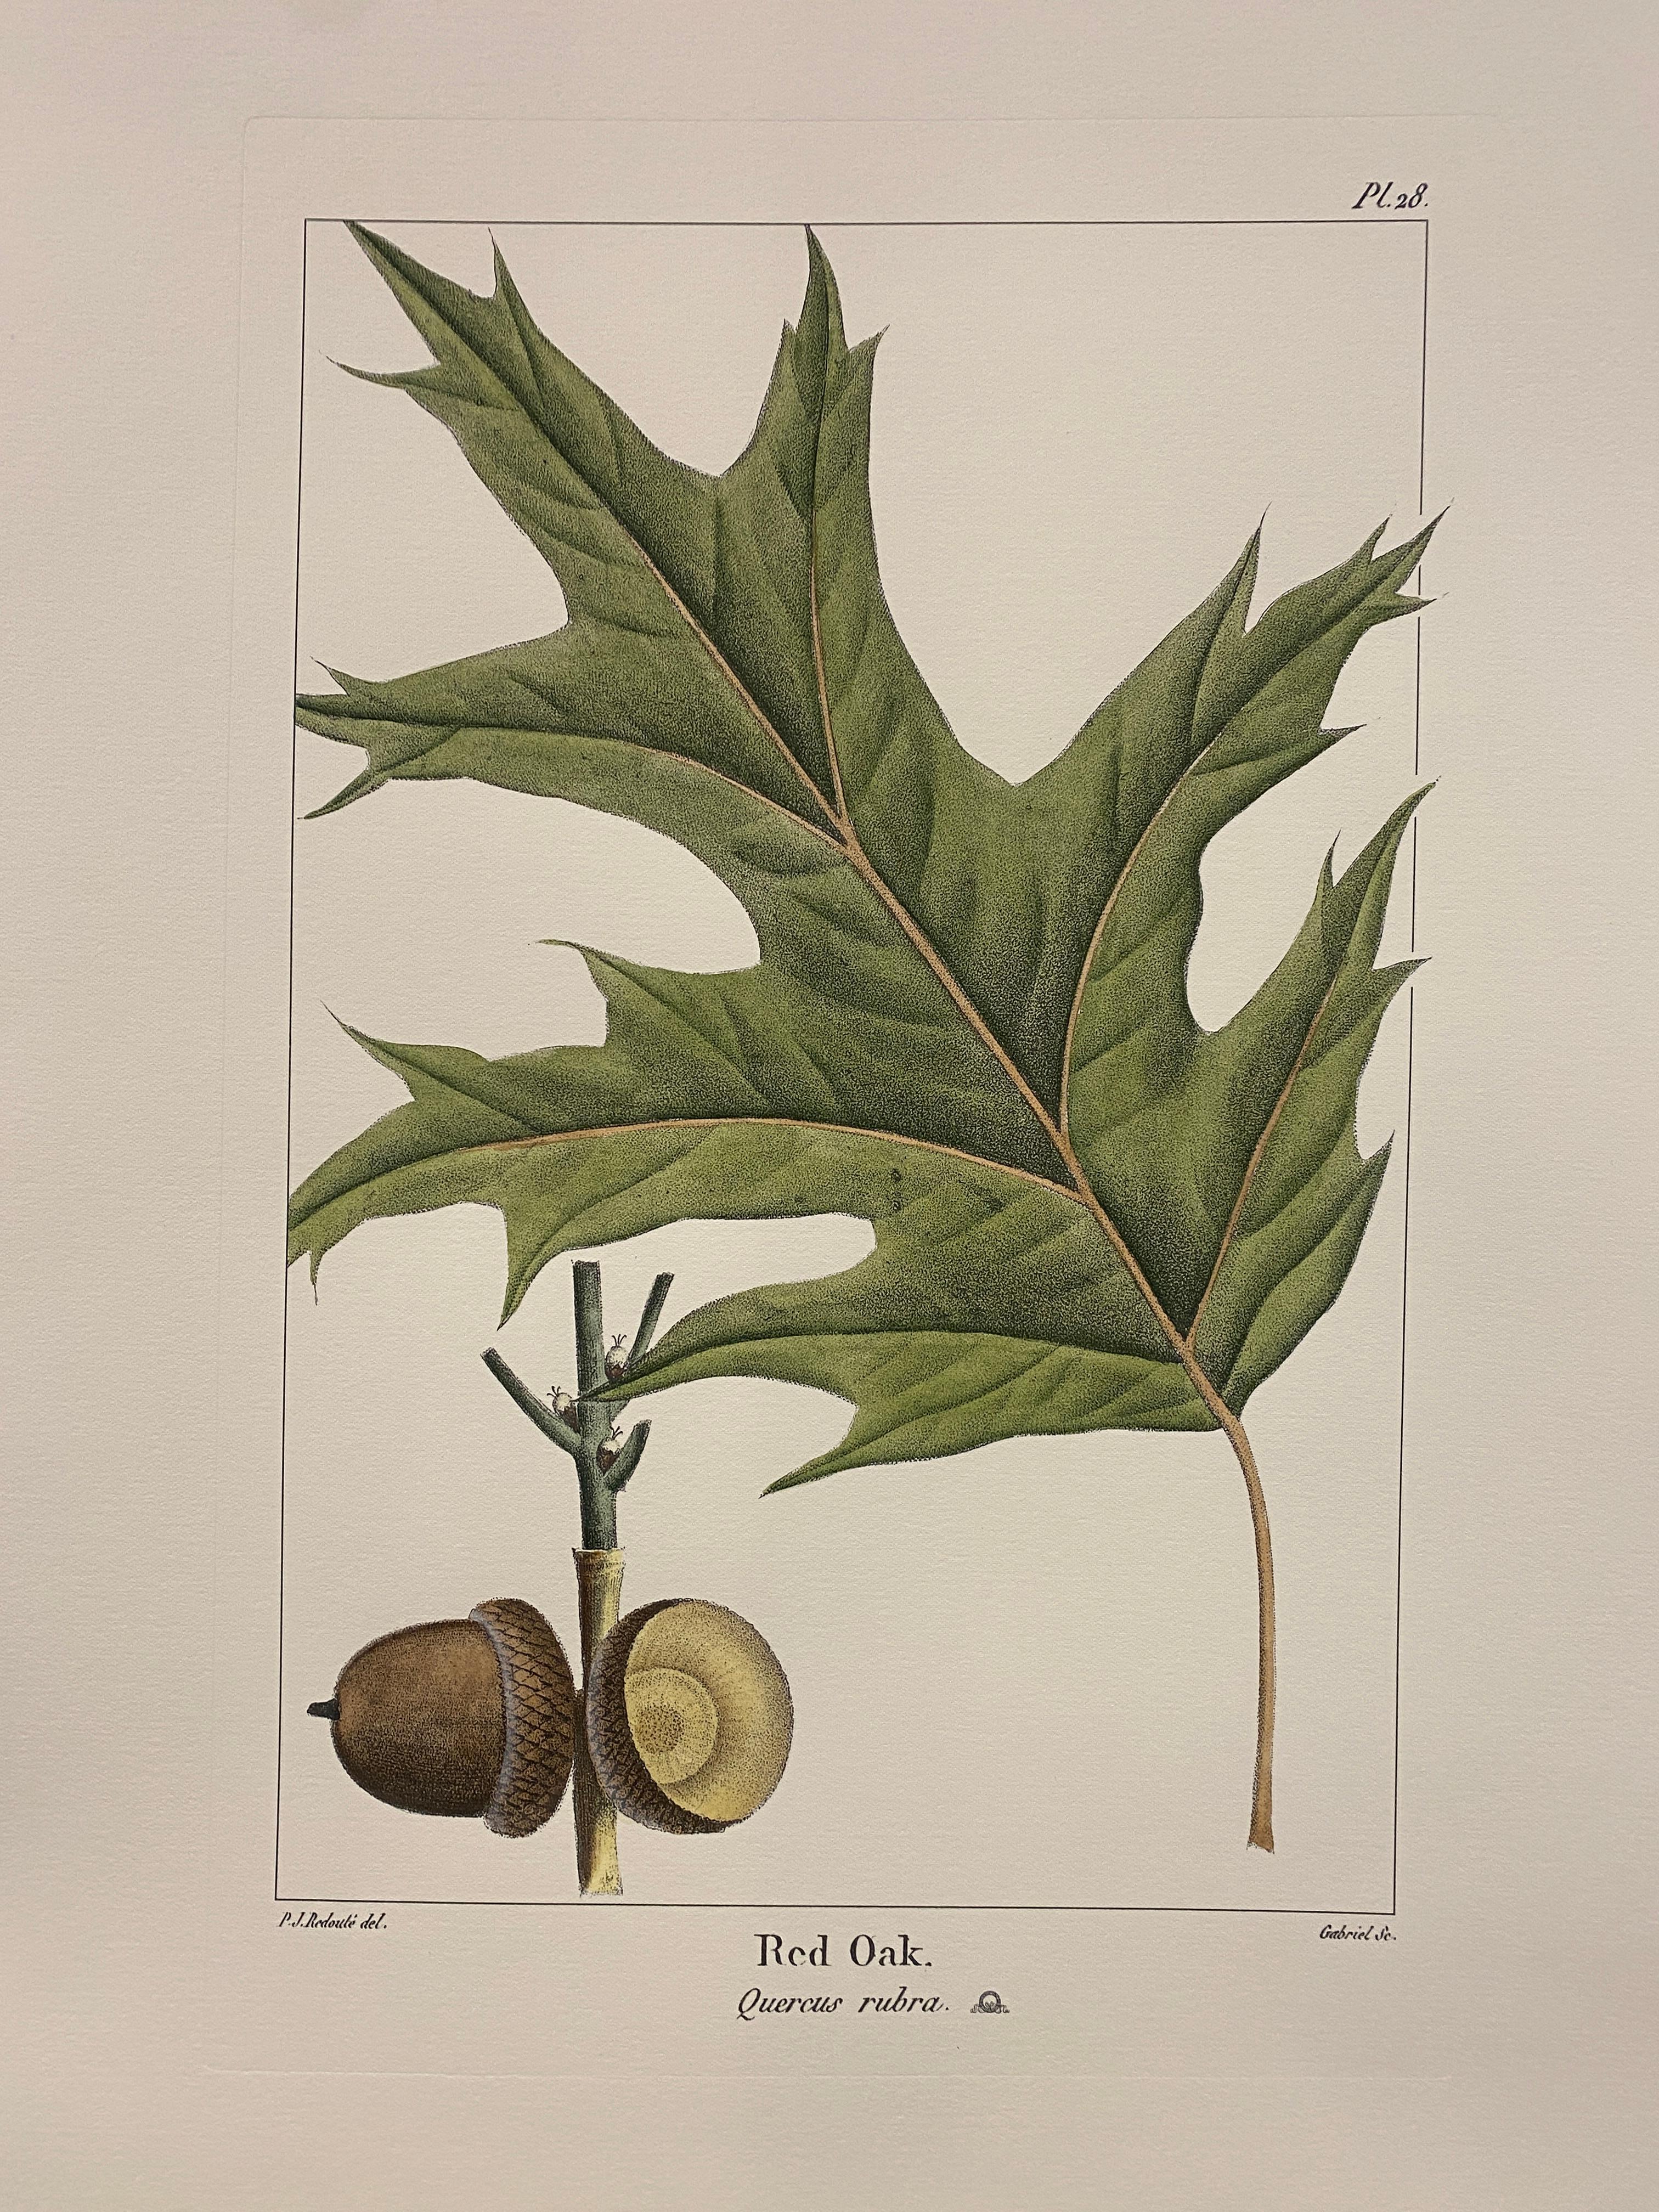 Druck aus der Collection Botanique Trees, der eine Roteiche darstellt, angereichert mit Grün- und Brauntönen und Aquarellnuancen, um sie realistischer zu machen.

Für eine farbenfrohe Komposition stehen auch verschiedene Blumendrucke von Bulbacee